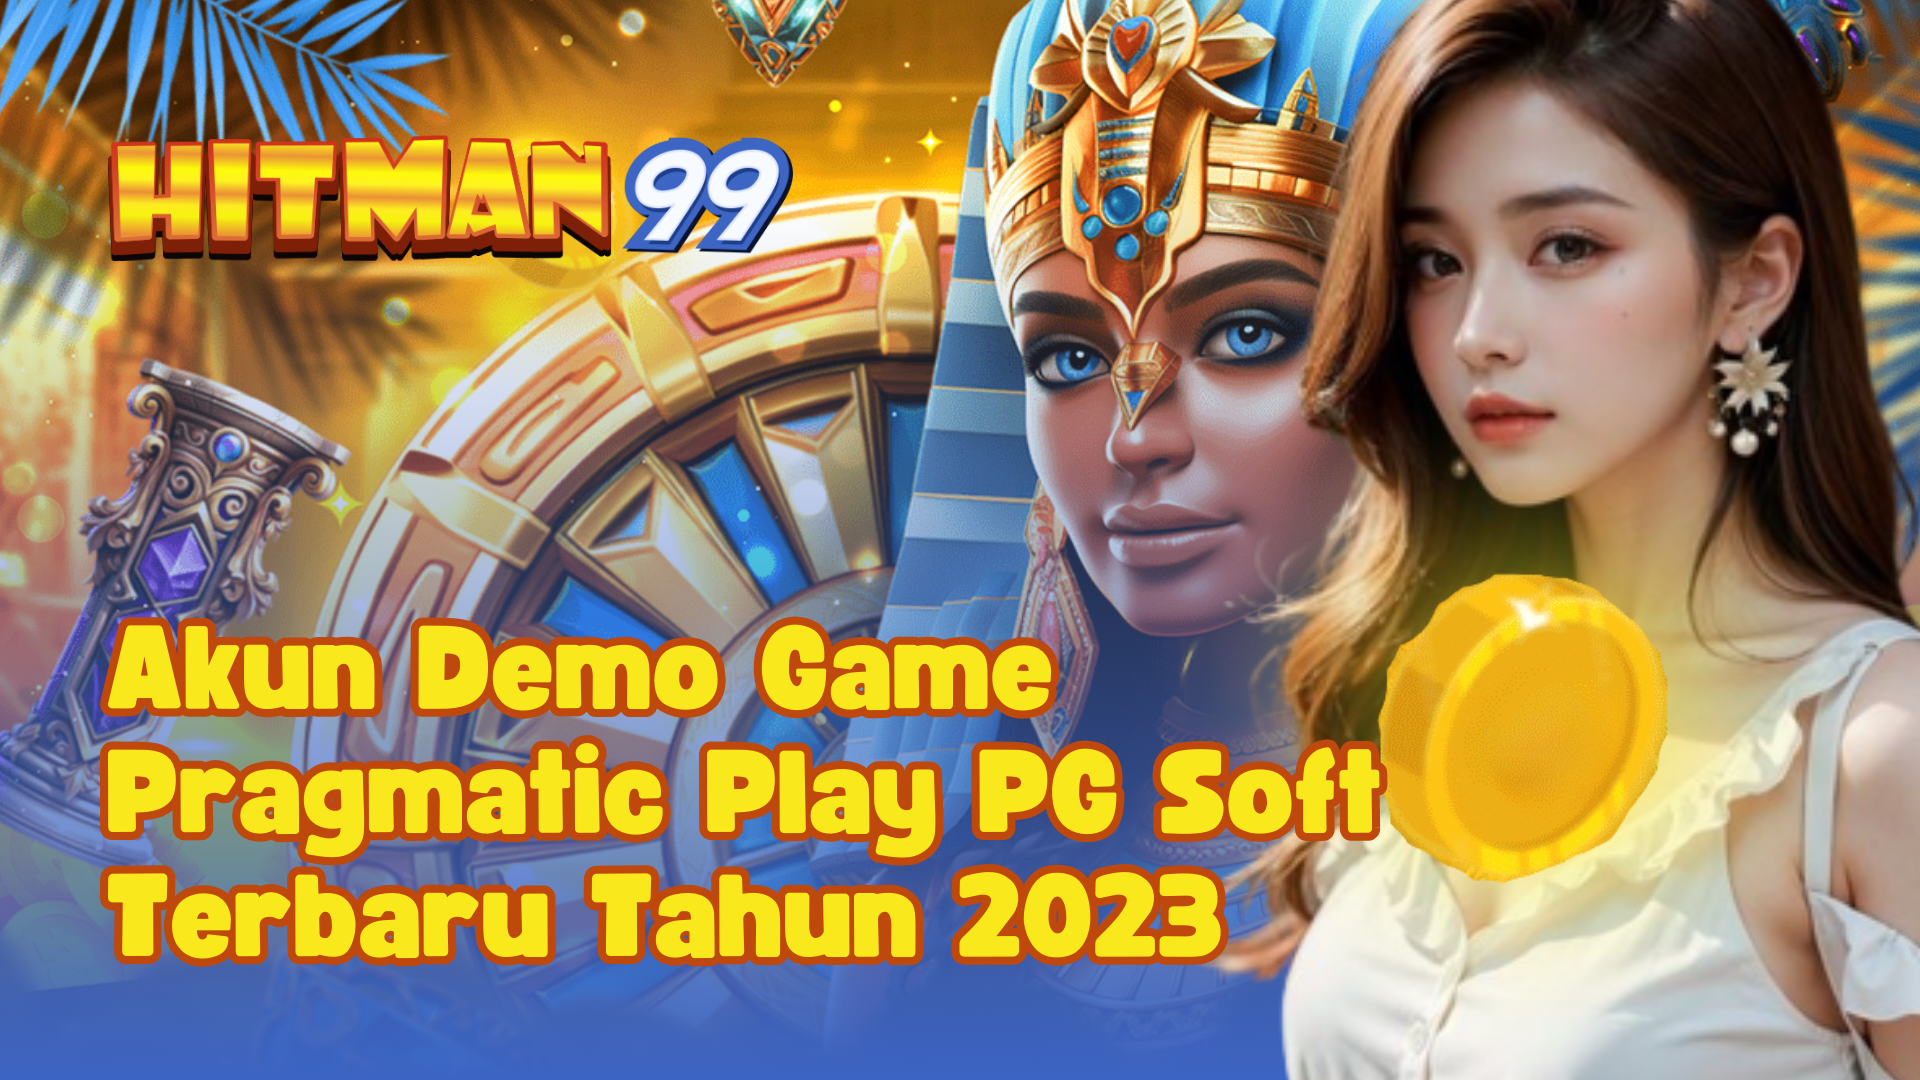 Akun Demo Game Pragmatic Play PG Soft Terbaru Tahun 2023